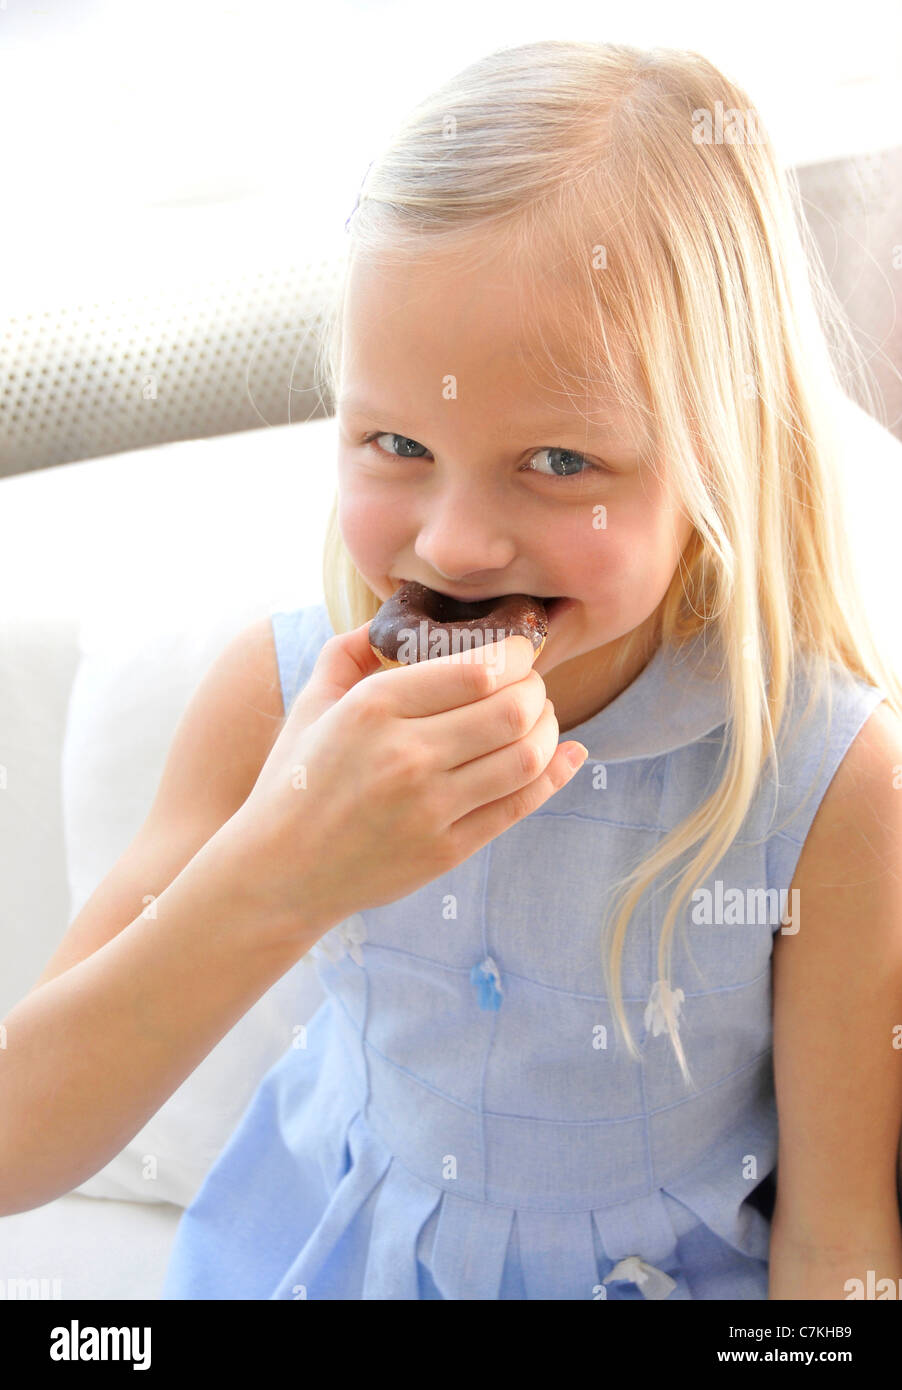 Jeune fille, 6, avec une robe bleue et un chocolat donut dans sa main Banque D'Images